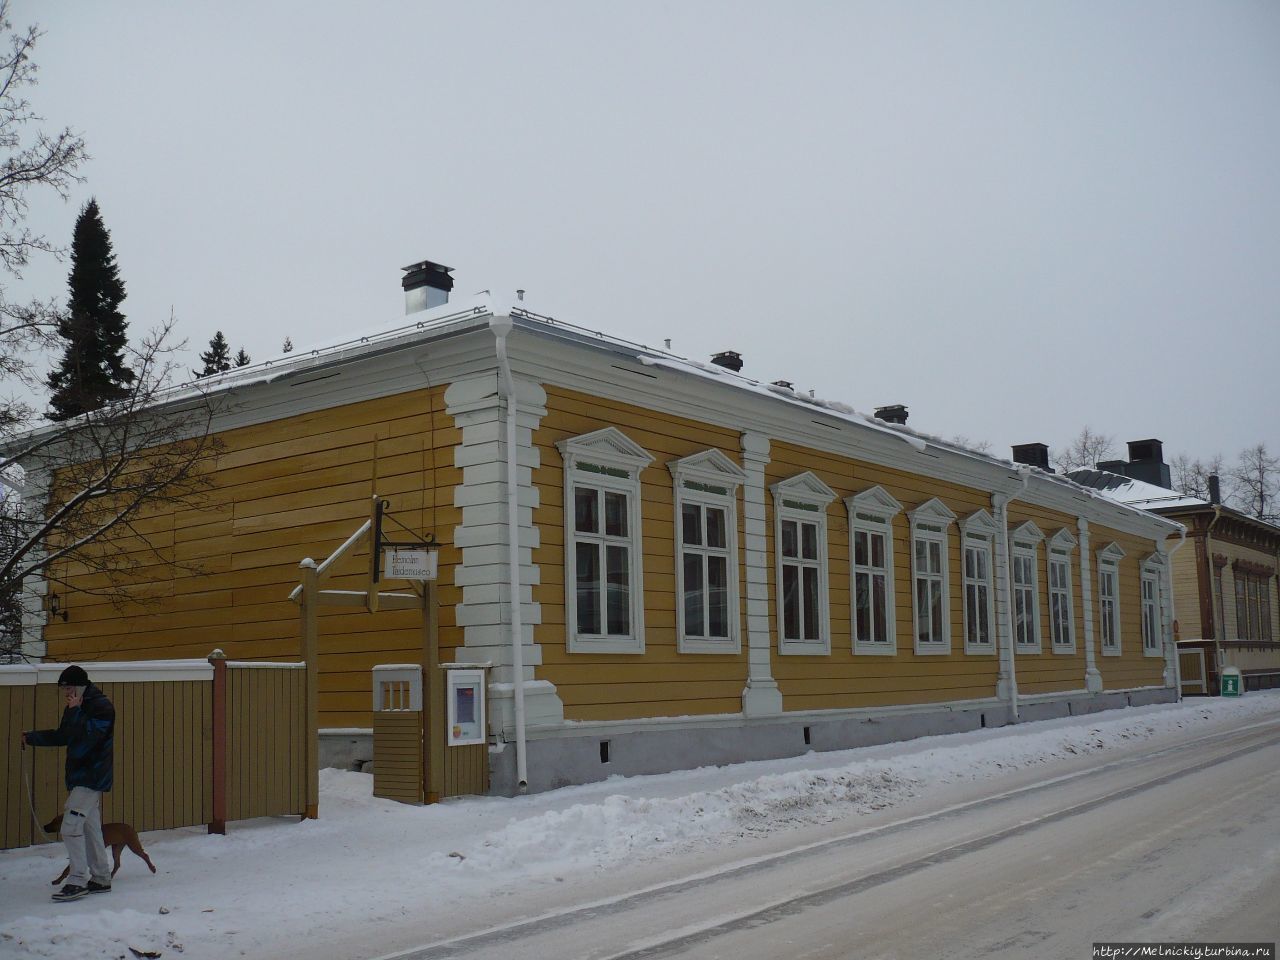 Художественный музей Хейнола, Финляндия